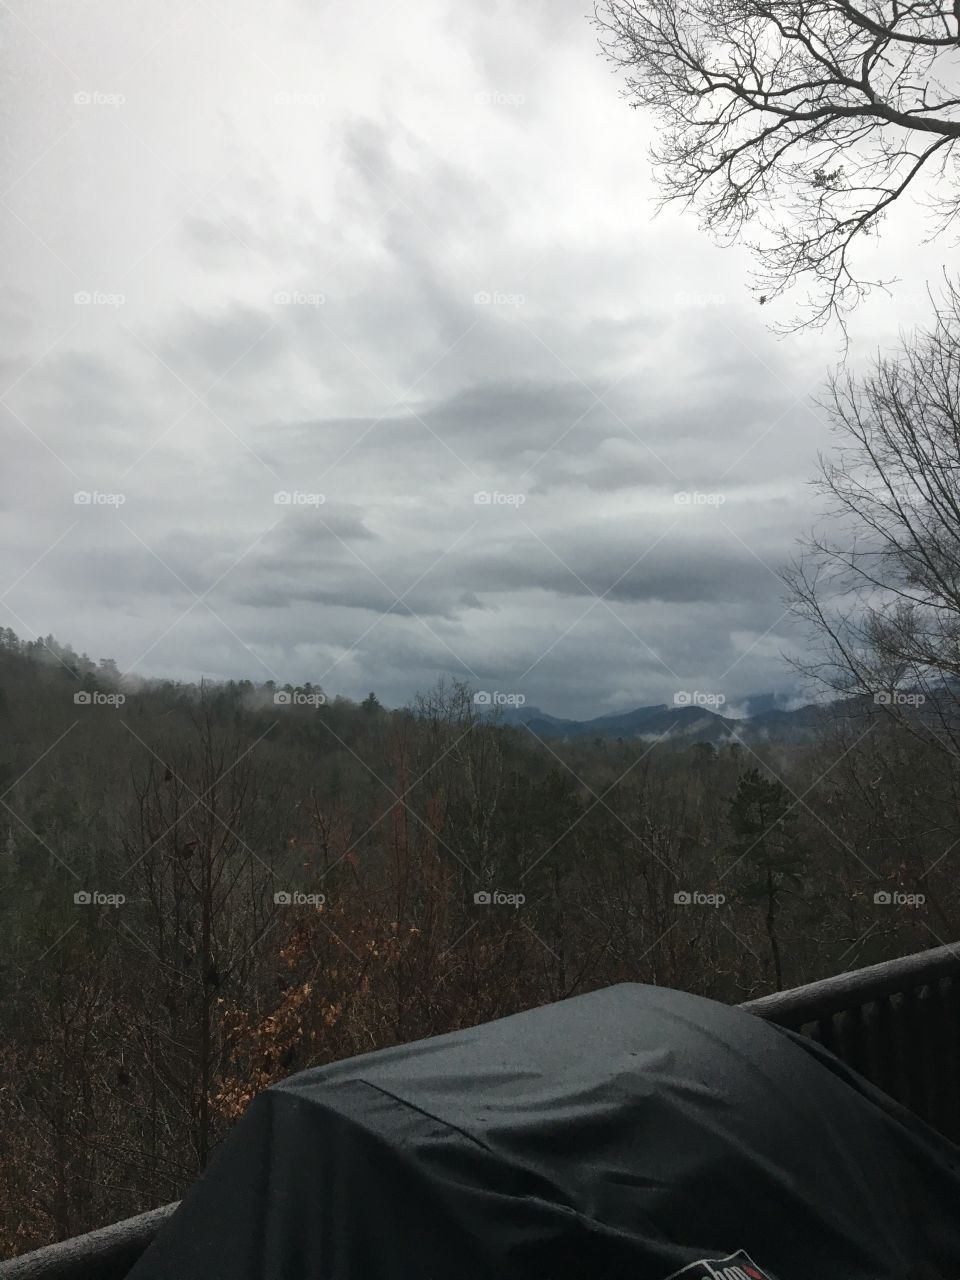 North Carolina smokie mountains